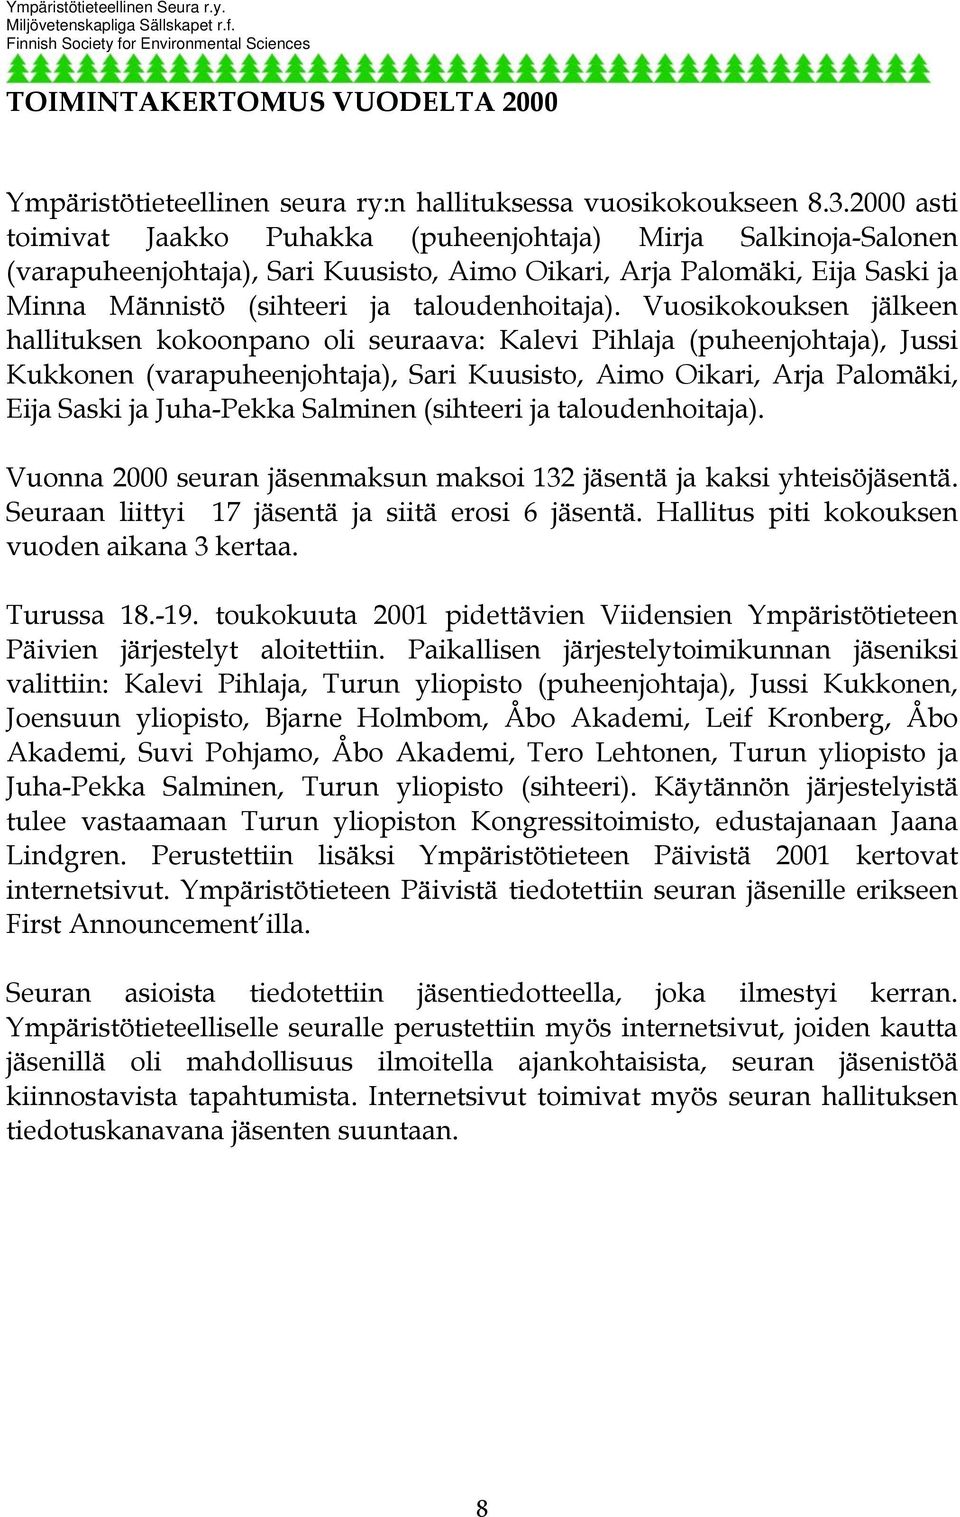 Vuosikokouksen jälkeen hallituksen kokoonpano oli seuraava: Kalevi Pihlaja (puheenjohtaja), Jussi Kukkonen (varapuheenjohtaja), Sari Kuusisto, Aimo Oikari, Arja Palomäki, Eija Saski ja Juha-Pekka